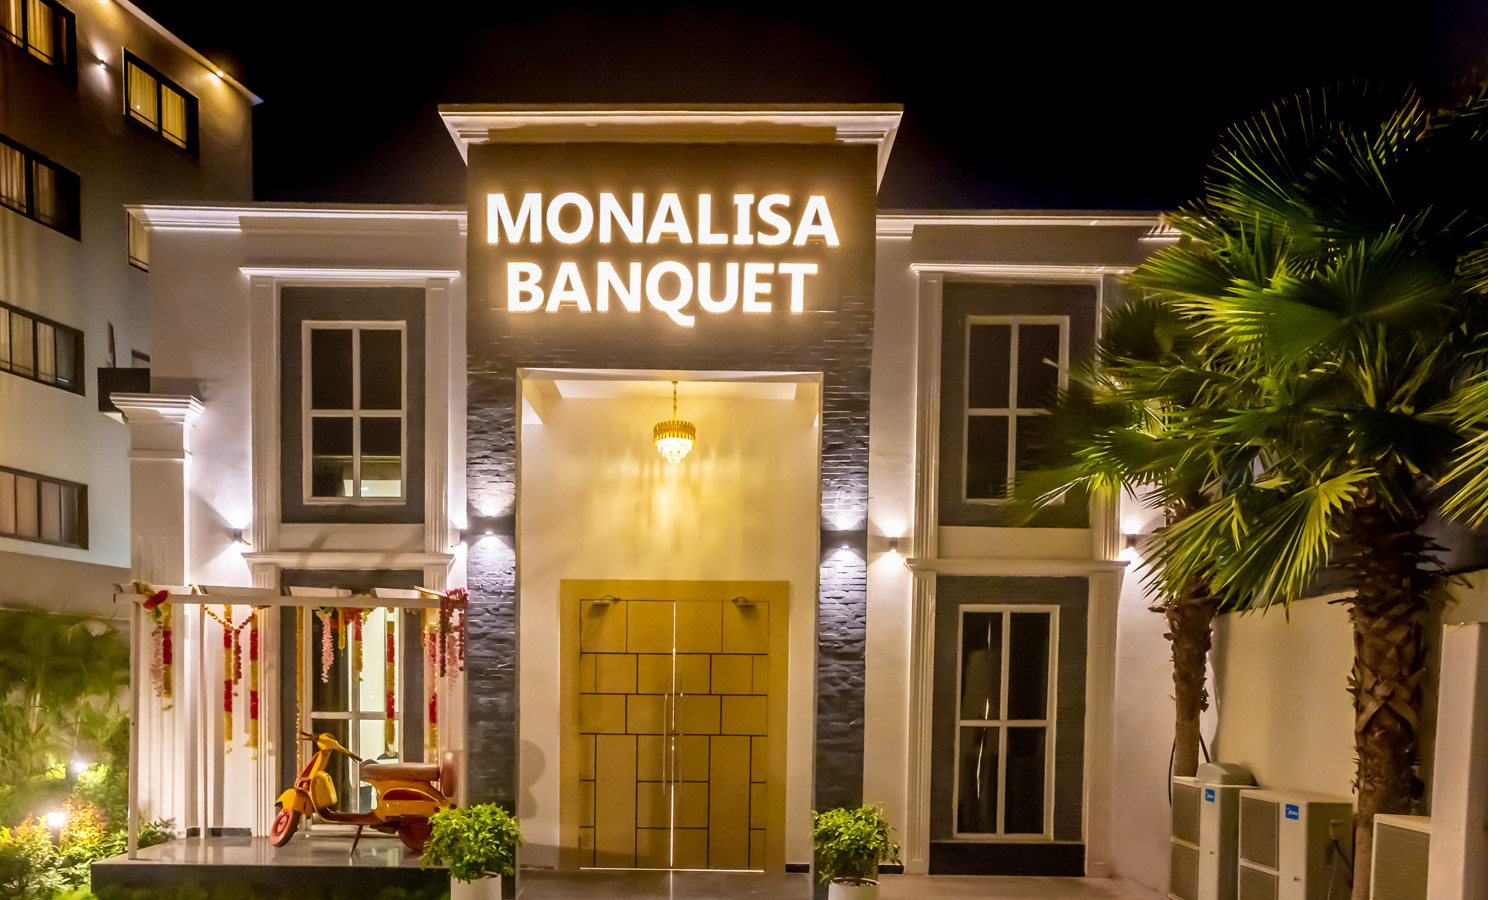 Monalisa Banquet